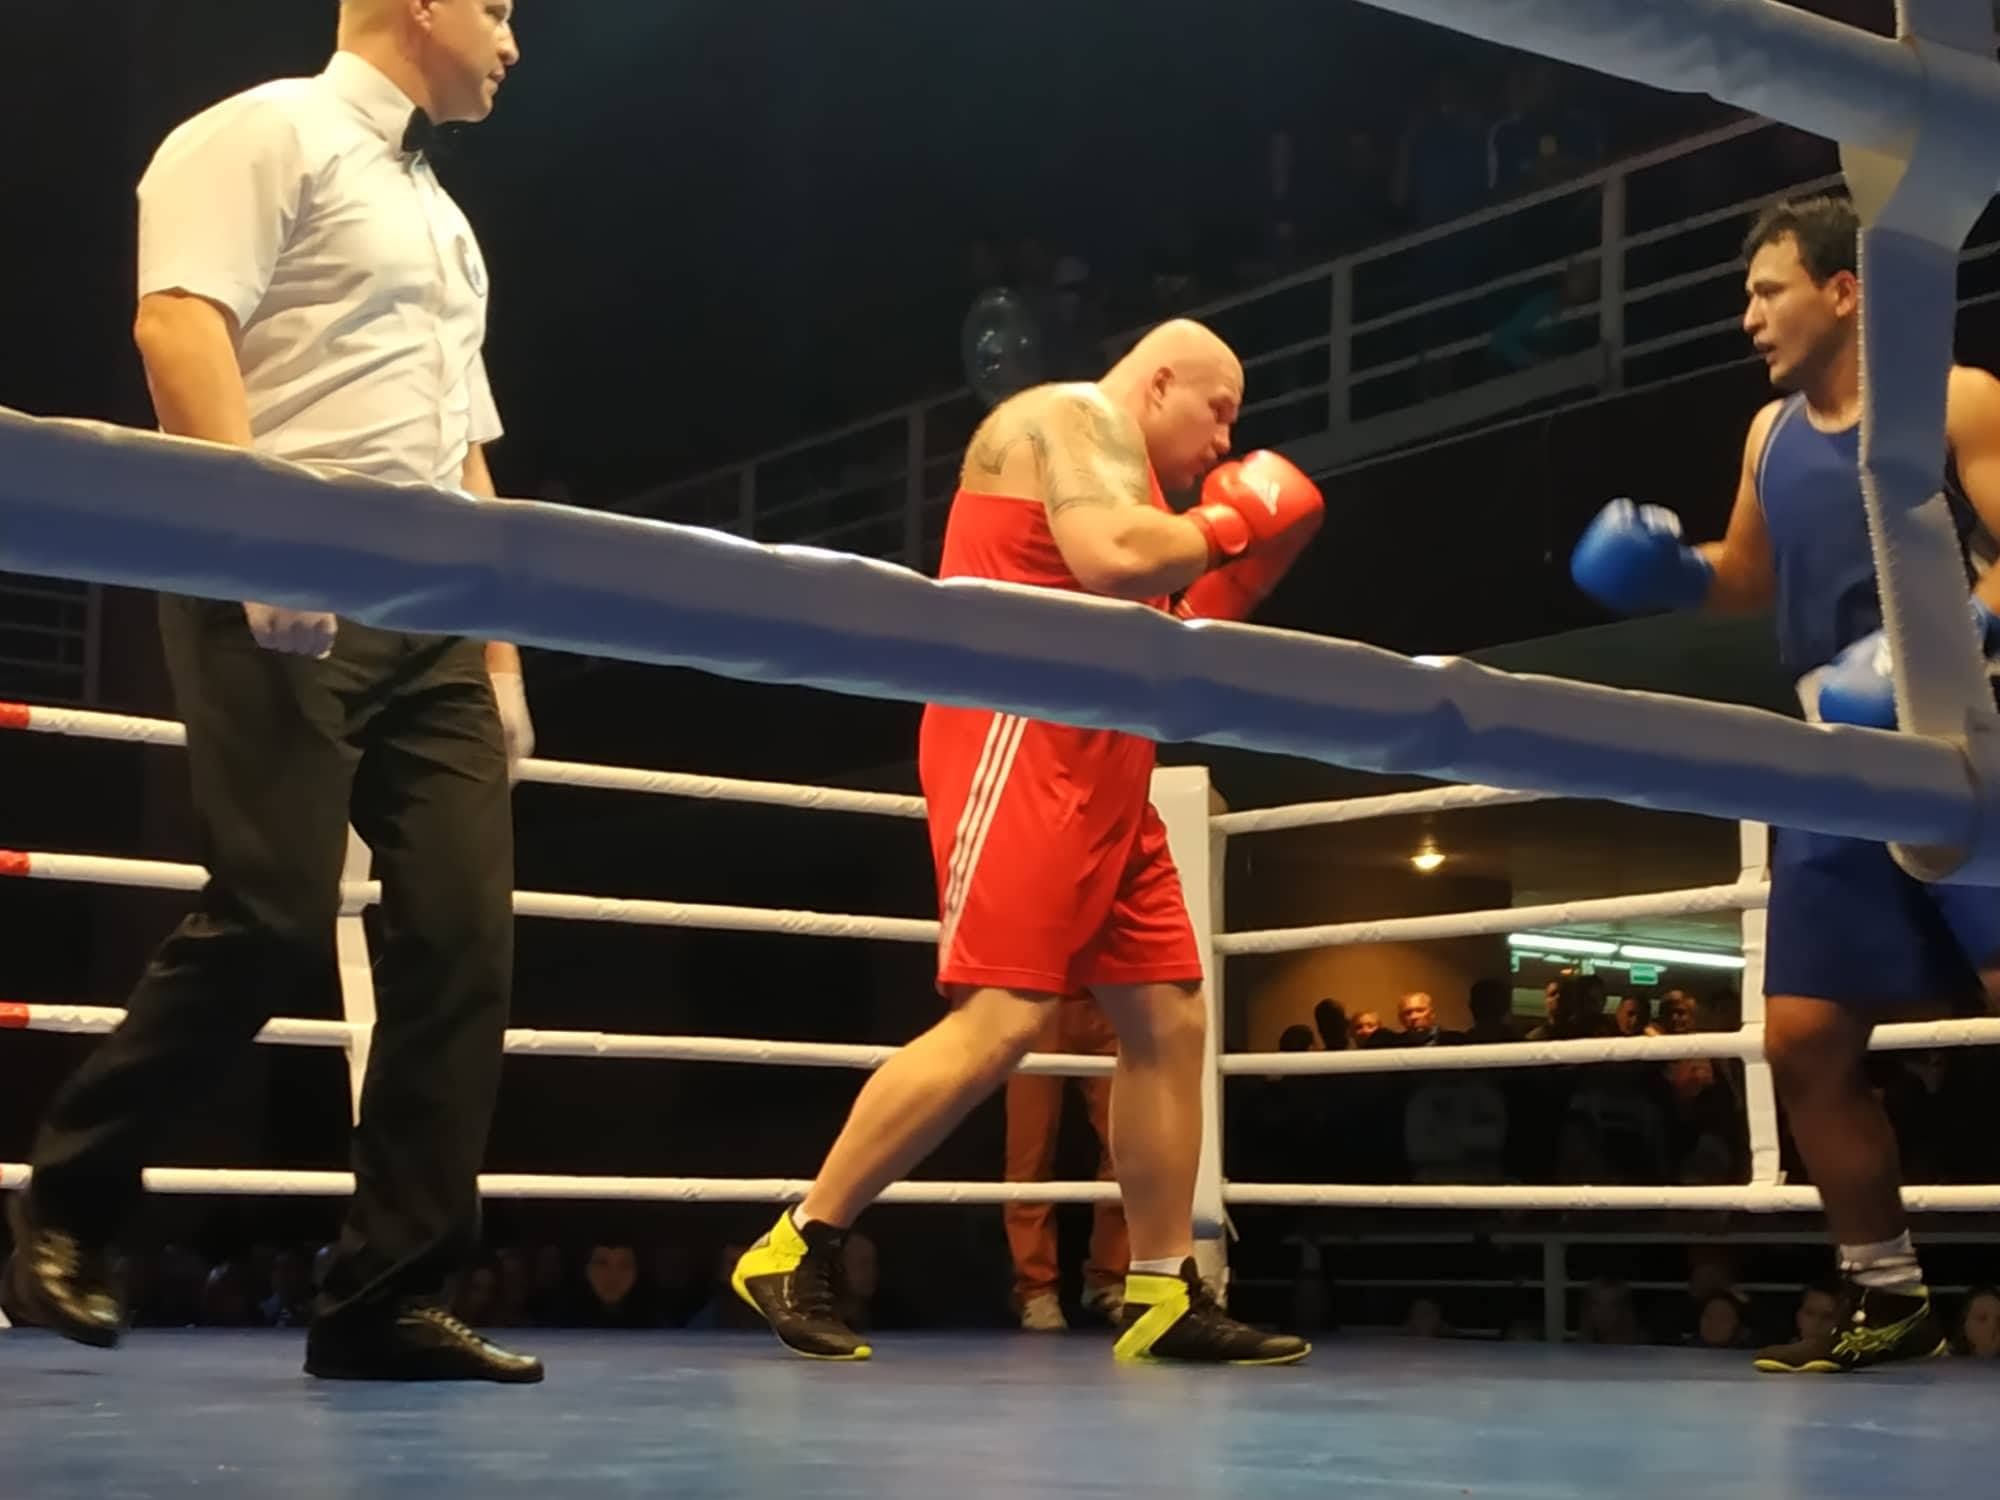 Непереможений український супертяж відправив суперника в нокаут вже у першому раунді: відео